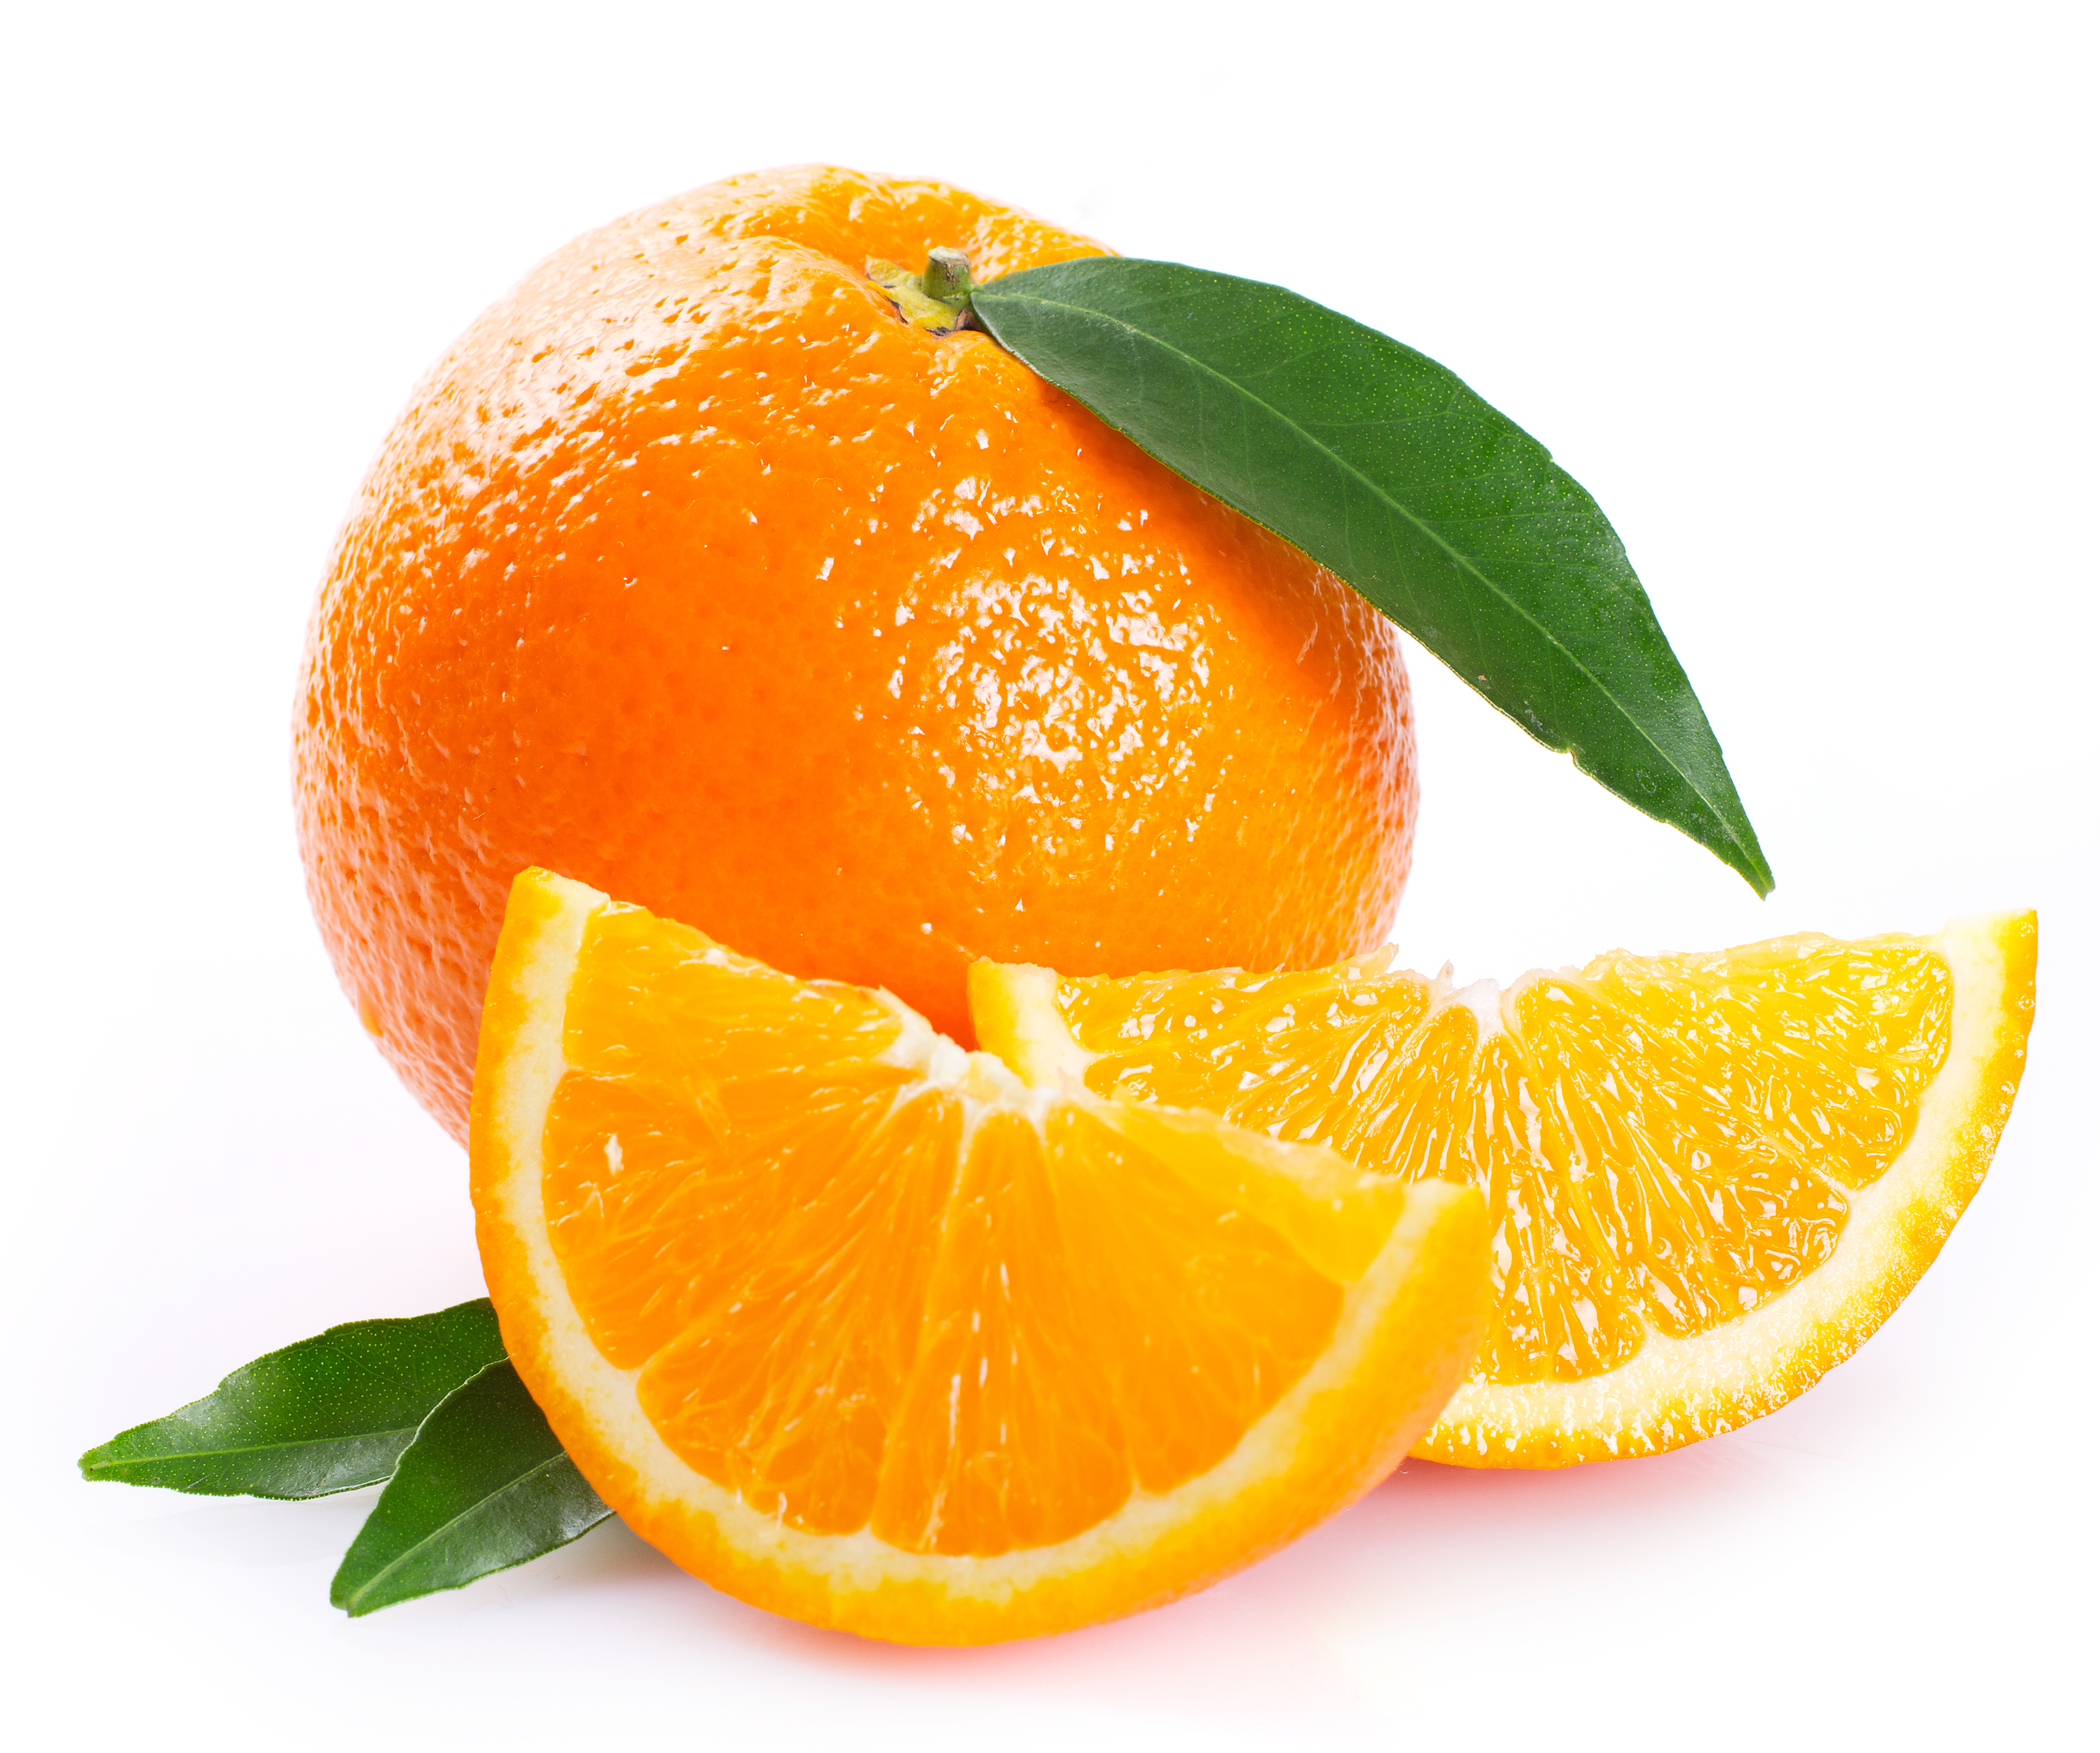 Appelsin er selve påskefrukten og kan gjerne få plass i påskeegget. Bilde: AdobeStock